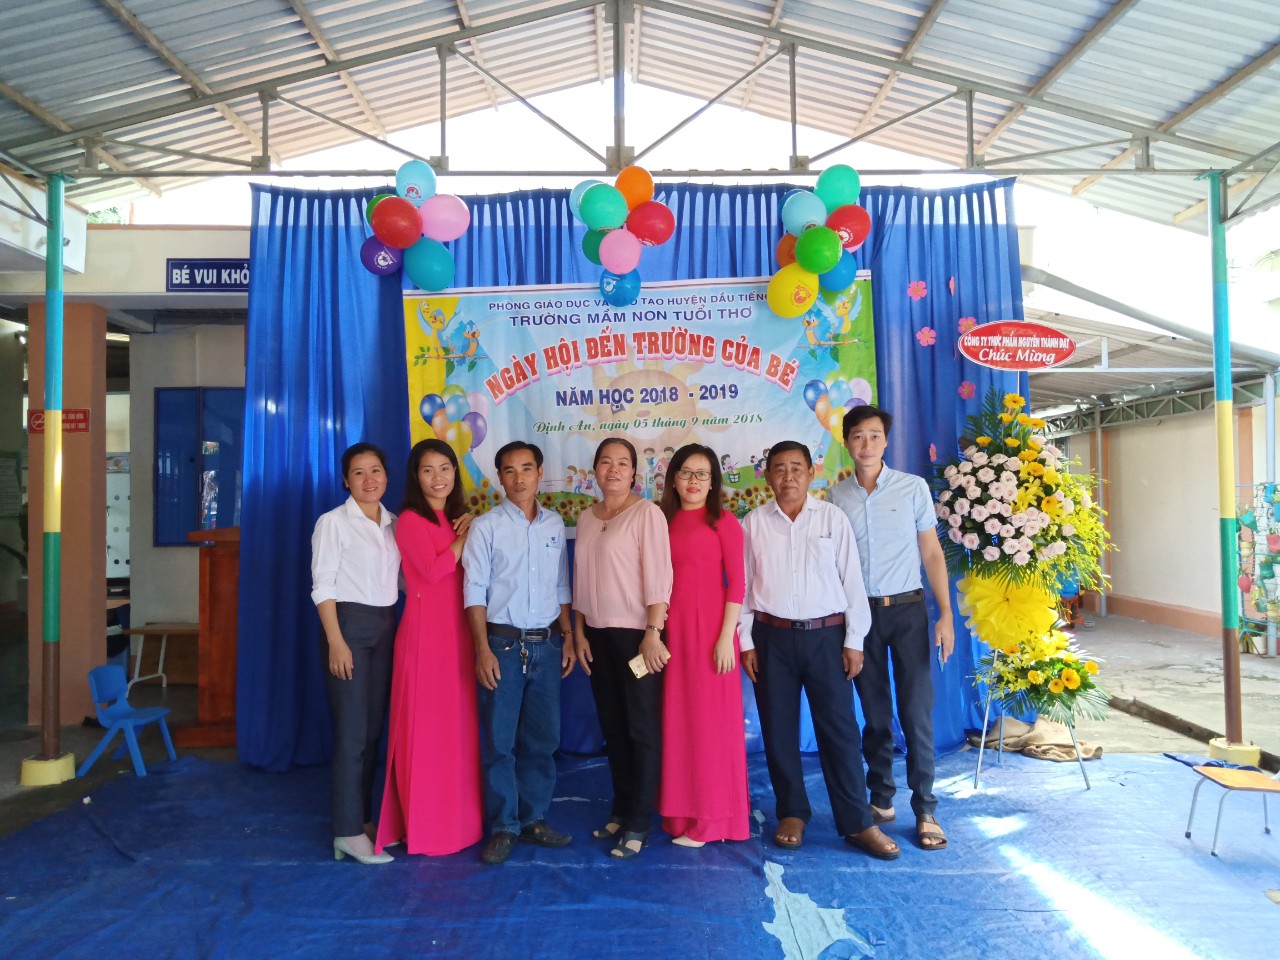 Trường mầm non Tuổi Thơ tổ chức lễ khai giảng năm học 2018-2019 cho các bé.